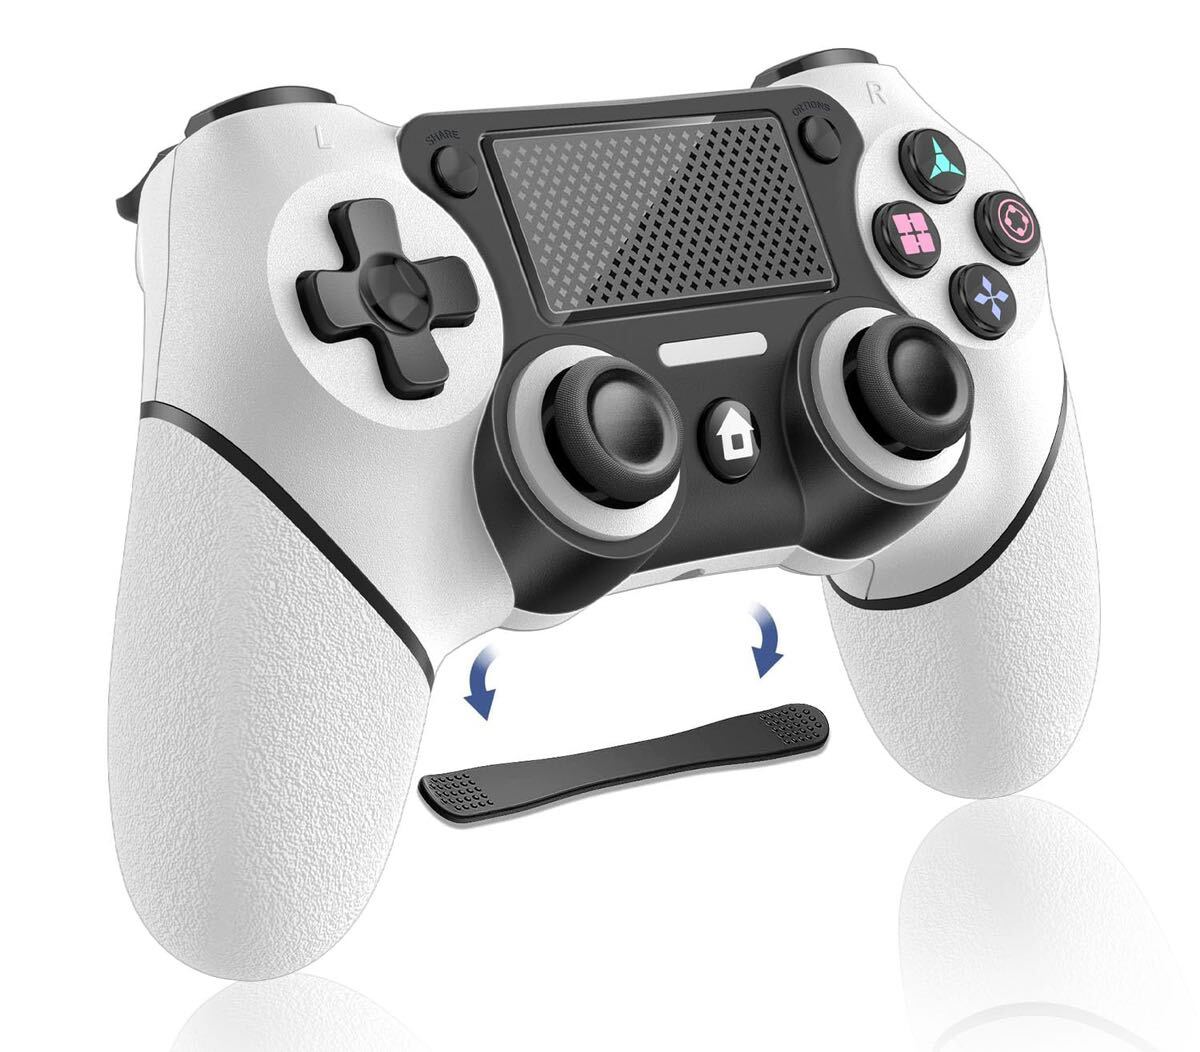 PS4コントローラー ps4 コントローラー純正 マクロ機能 背面ボタン ゲームパット 1000mAh大容量Bluetooth5.0無線接続 HD振動 Turbo連射機能_画像1